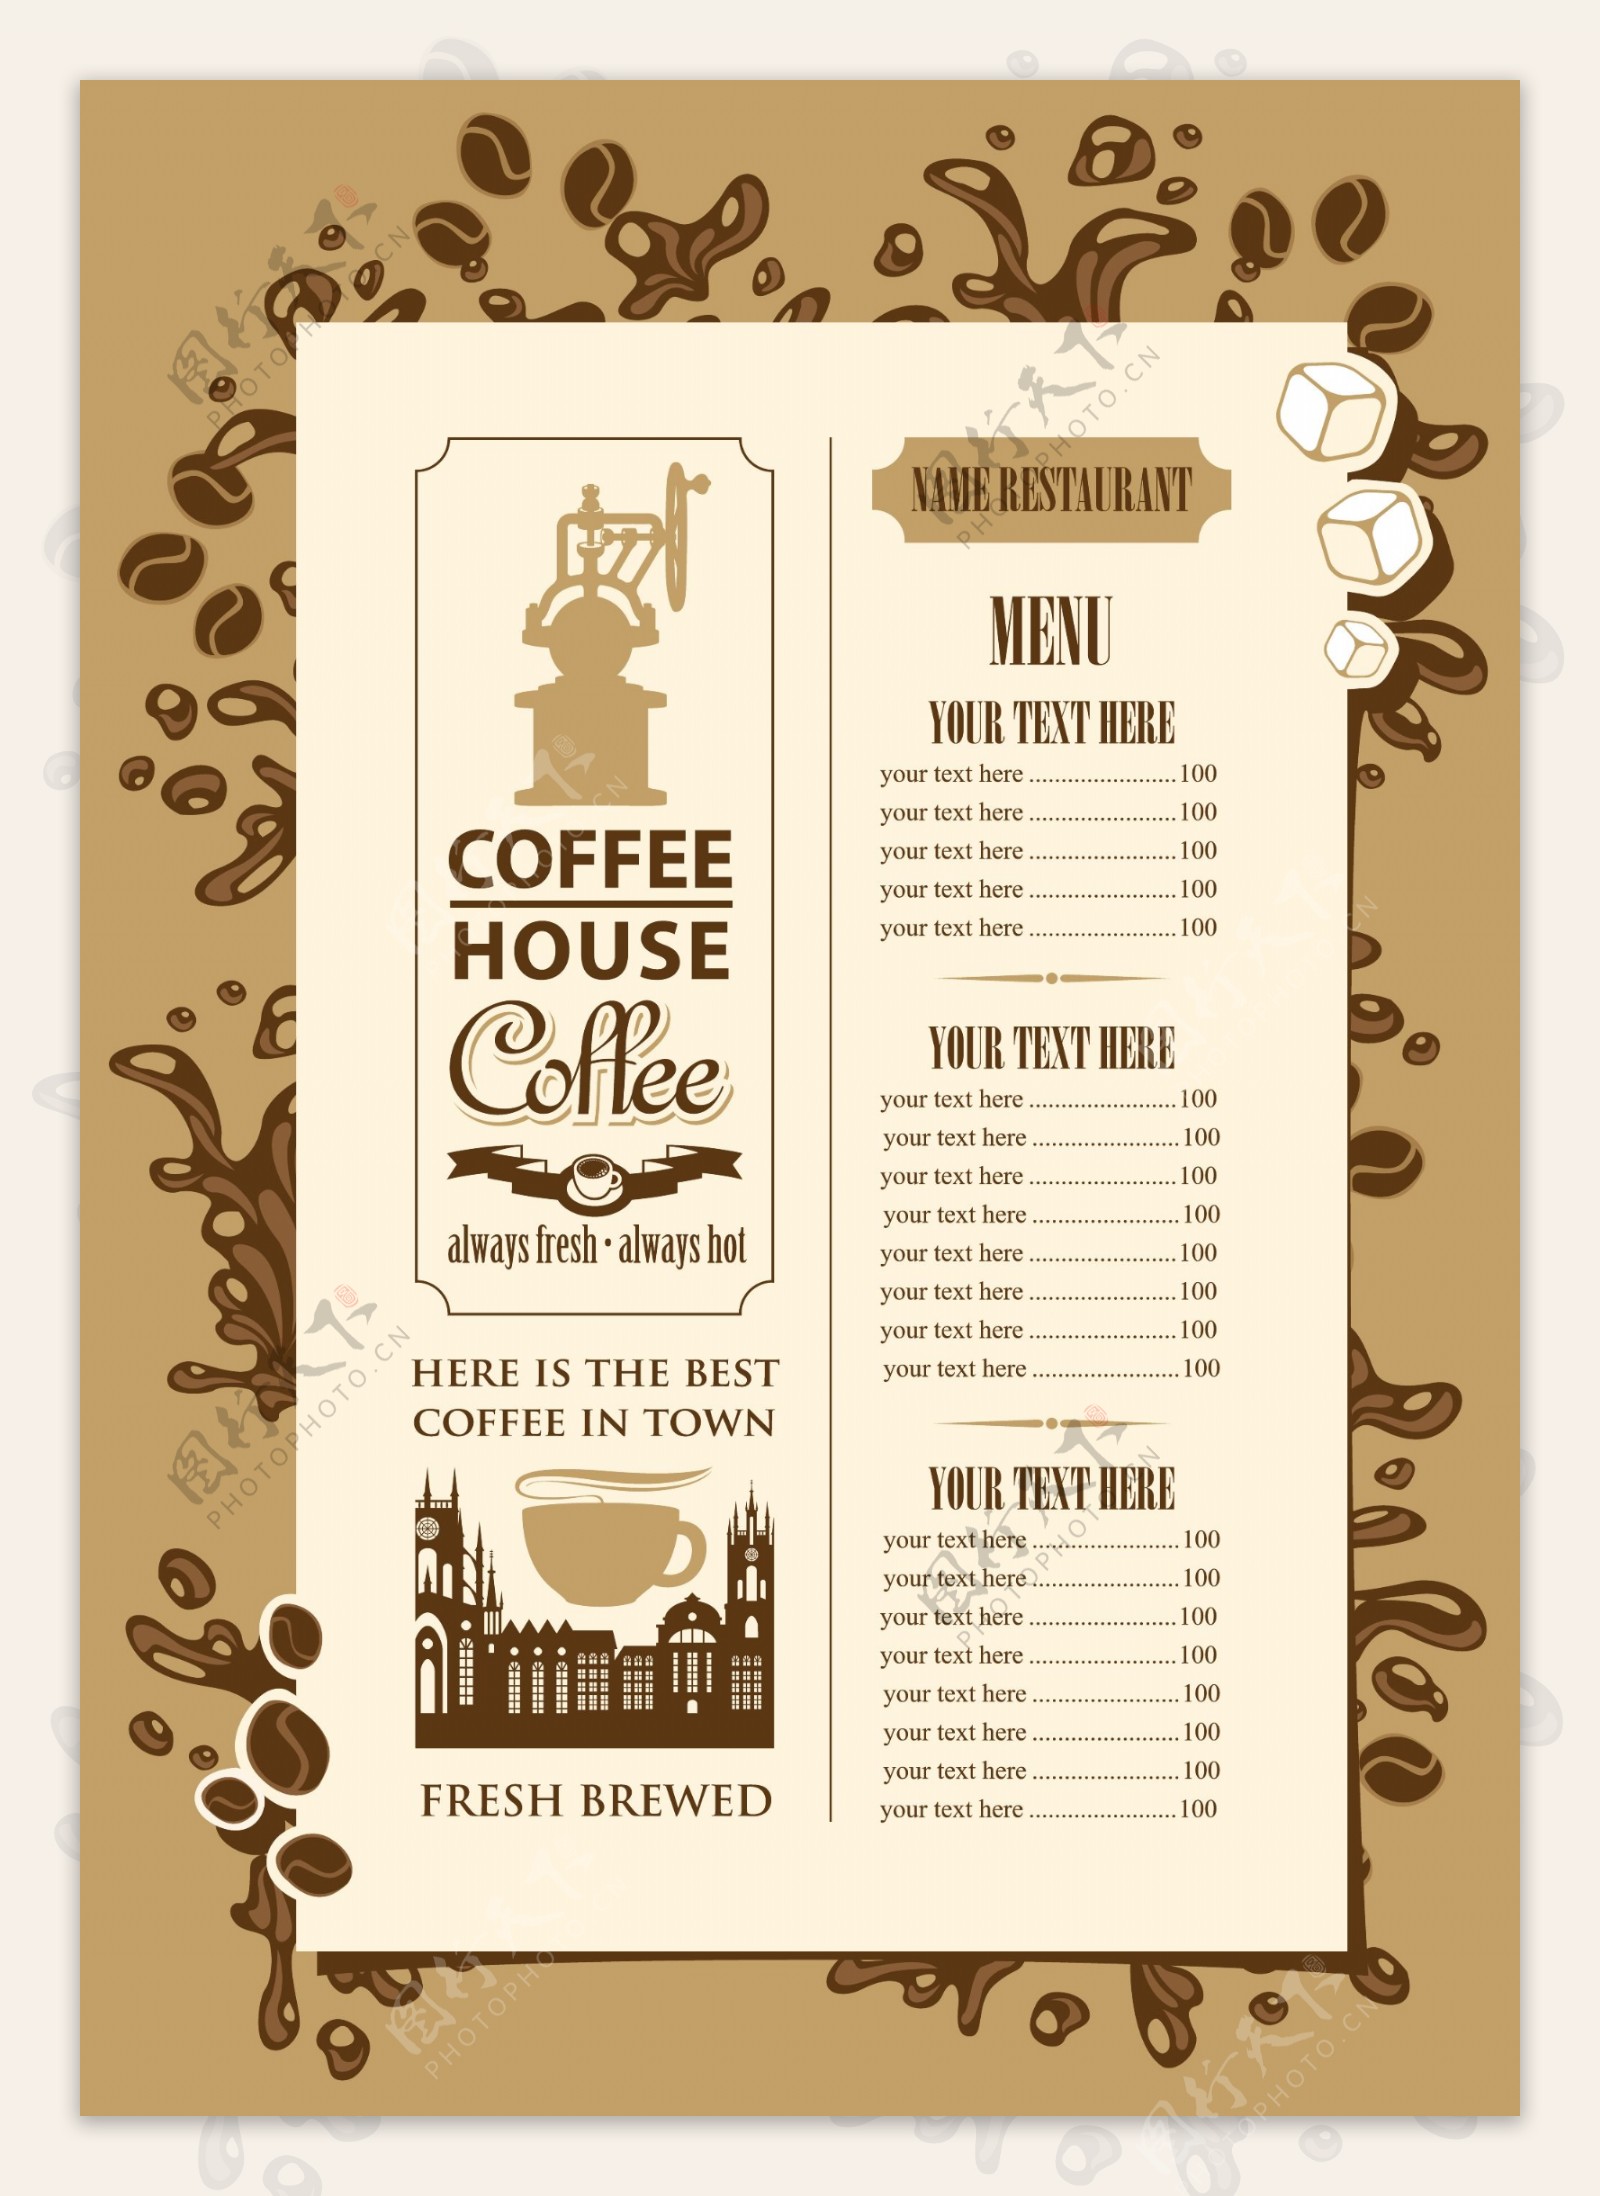 复古咖啡店菜单设计矢量素材